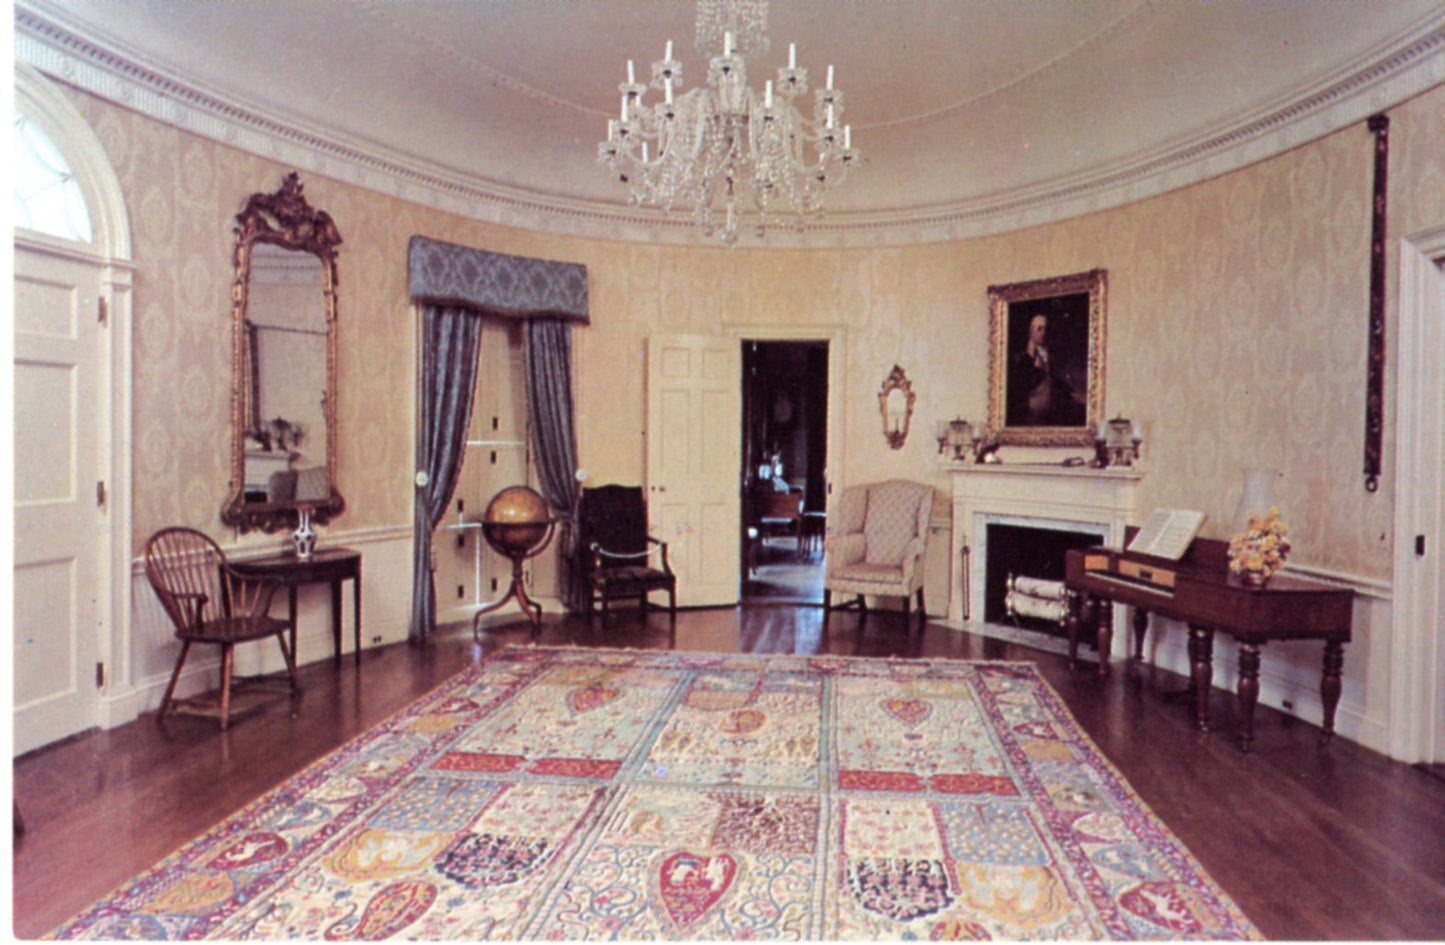 Montpelier Knox Mansion Oval Room THOMASTON MAINE Vintage Postcard ©1970's